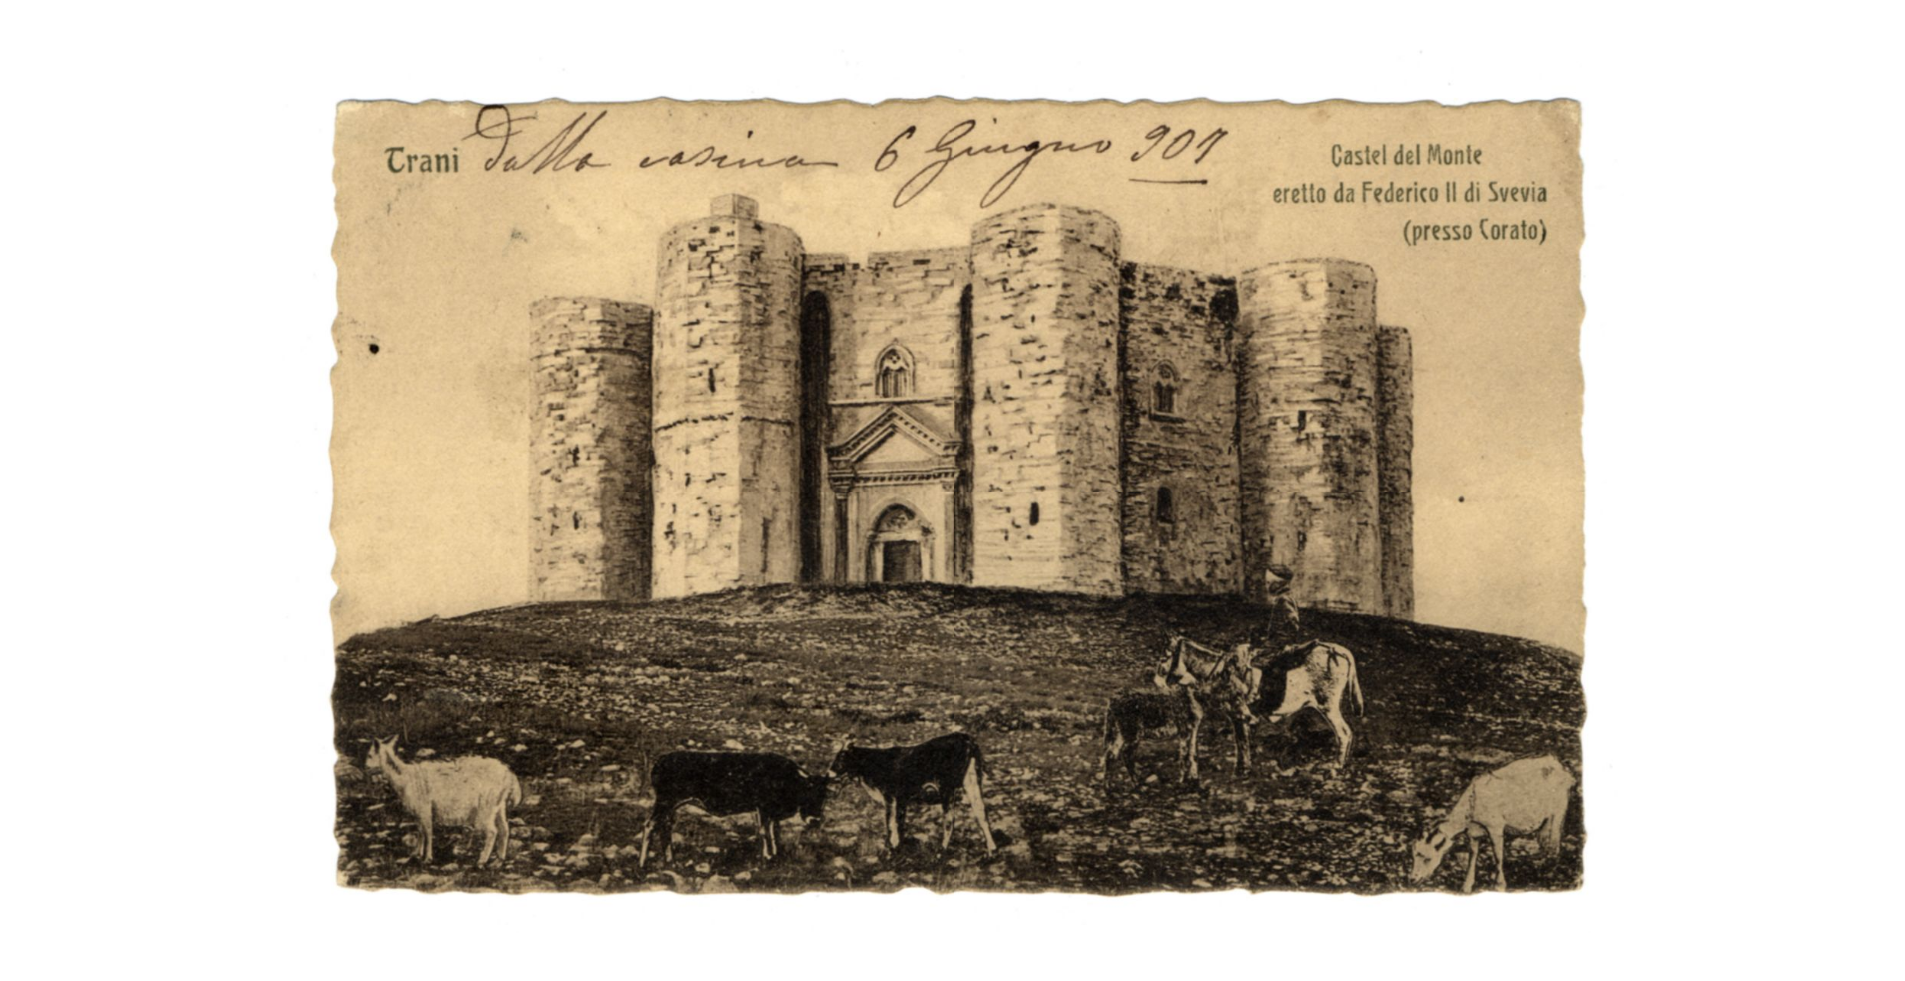 Fotografo non identificato, Andria - Castel del Monte eretto da Federico II di Svevia, 1907, cartolina, FFC040302